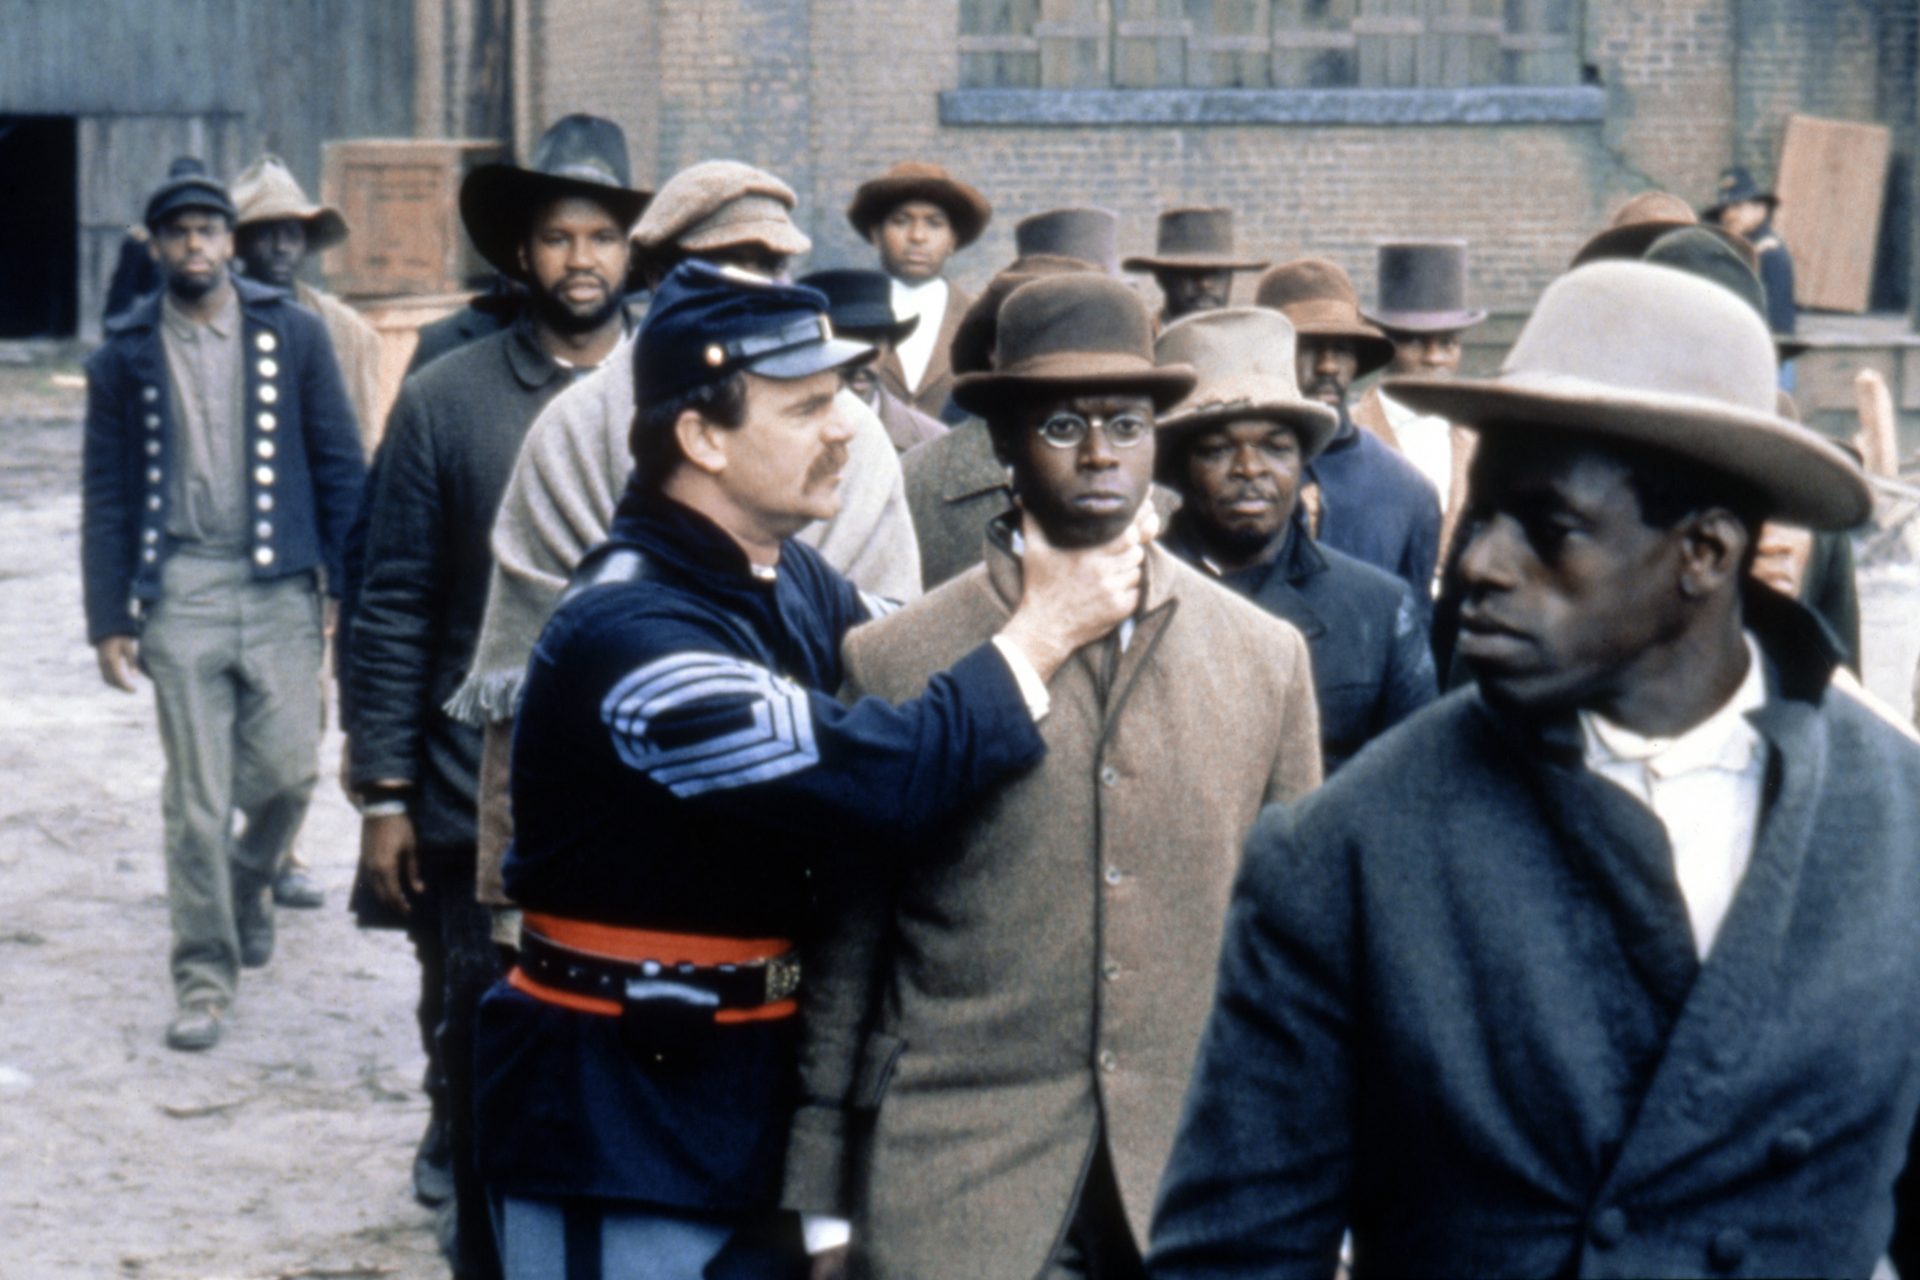 <p>Su primer papel cinematográfico fue en la película de 1989 'Glory' junto a Denzel Washington, Matthew Broderick y Morgan Freeman. La película trataba sobre uno de los primeros regimientos afroamericanos del Ejército de la Unión en la Guerra Civil. La película obtuvo tres premios Oscar.</p> <p><a href="https://www.msn.com/es-xl/entretenimiento/fotos-famosas/famosos-fallecidos-en-noviembre-de-2023/ss-AA1kKQRA"><strong>Además: Famosos fallecidos en noviembre de 2023</strong></a></p>